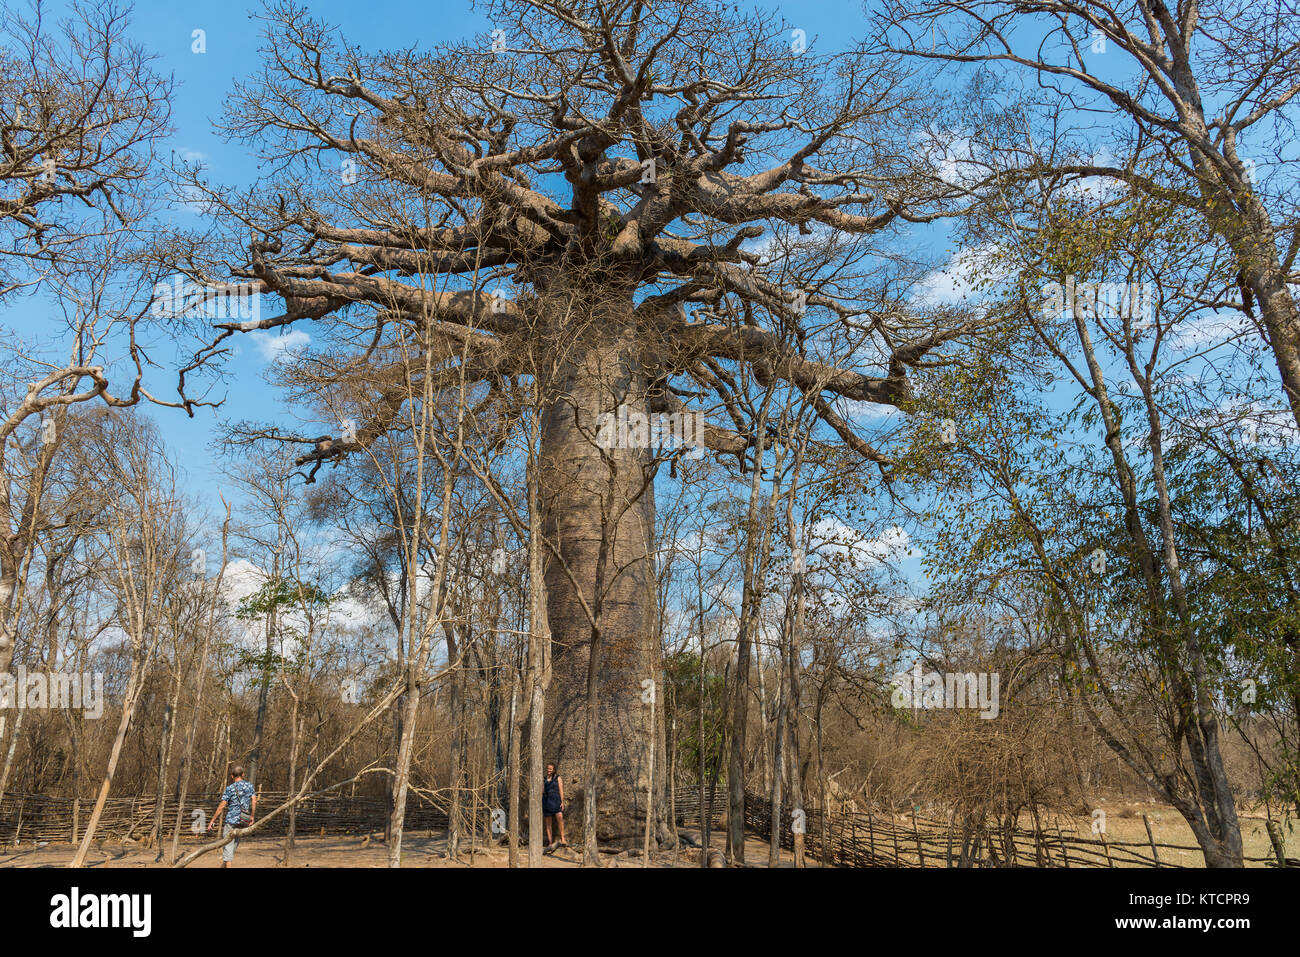 Un géant Baobab (Adansonia grandidieri) considéré comme sacré pour les habitants. Morondava, Madagascar, Afrique. Banque D'Images